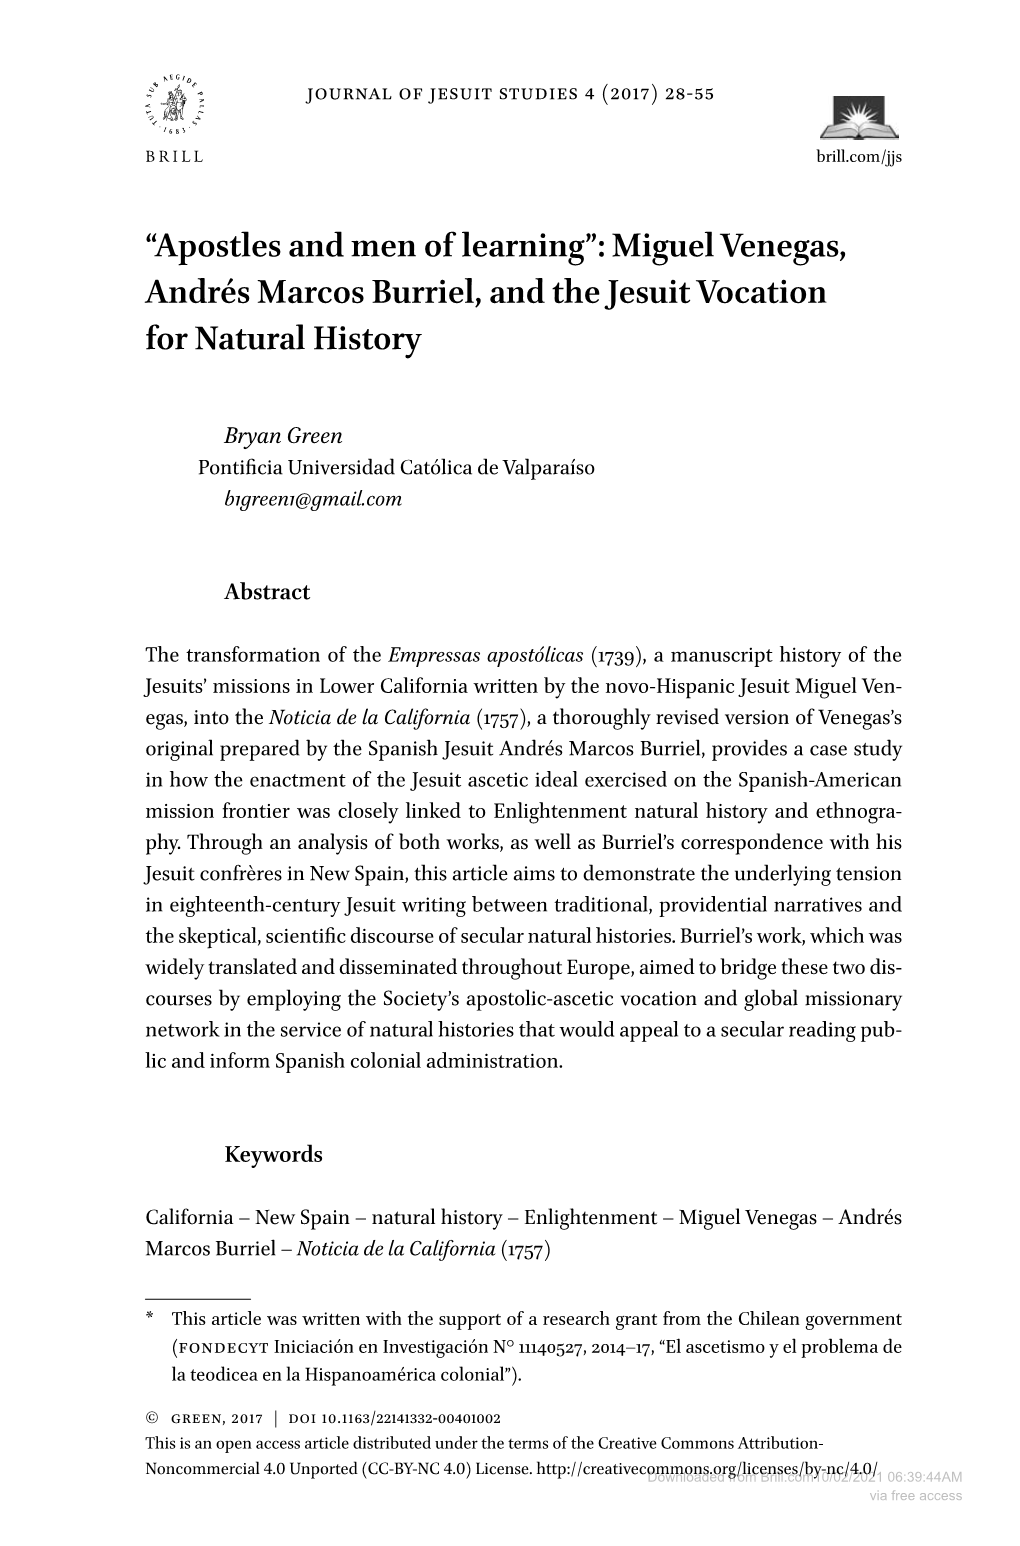 Miguel Venegas, Andrés Marcos Burriel, and the Jesuit Vocation for Natural History